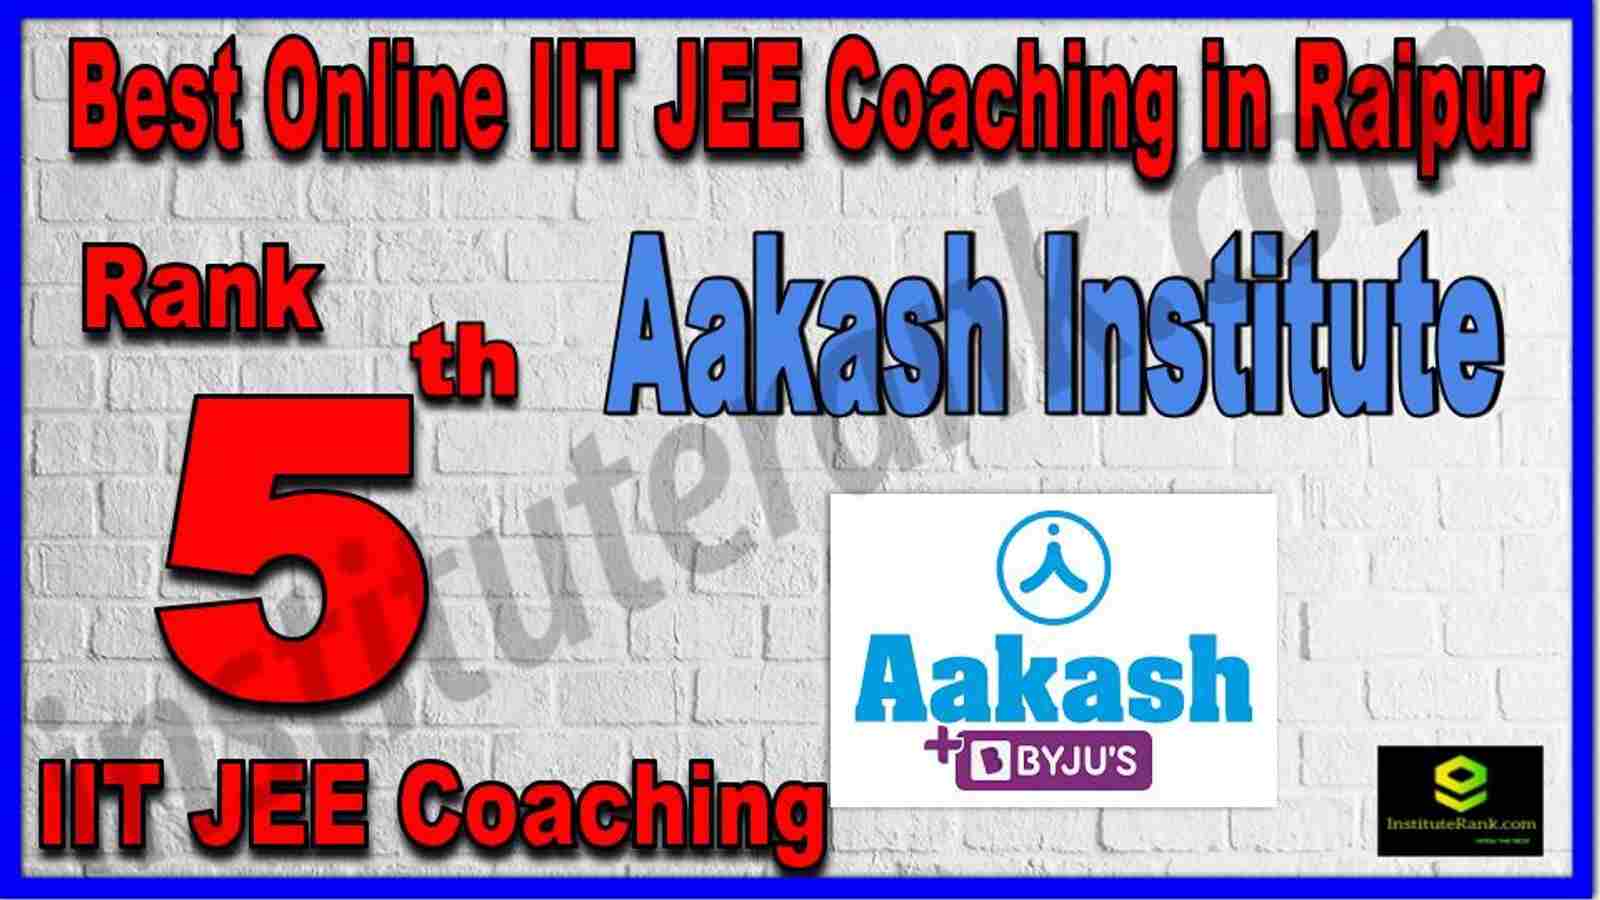 Rank 5th Best Online IIT JEE Coaching in Raipur